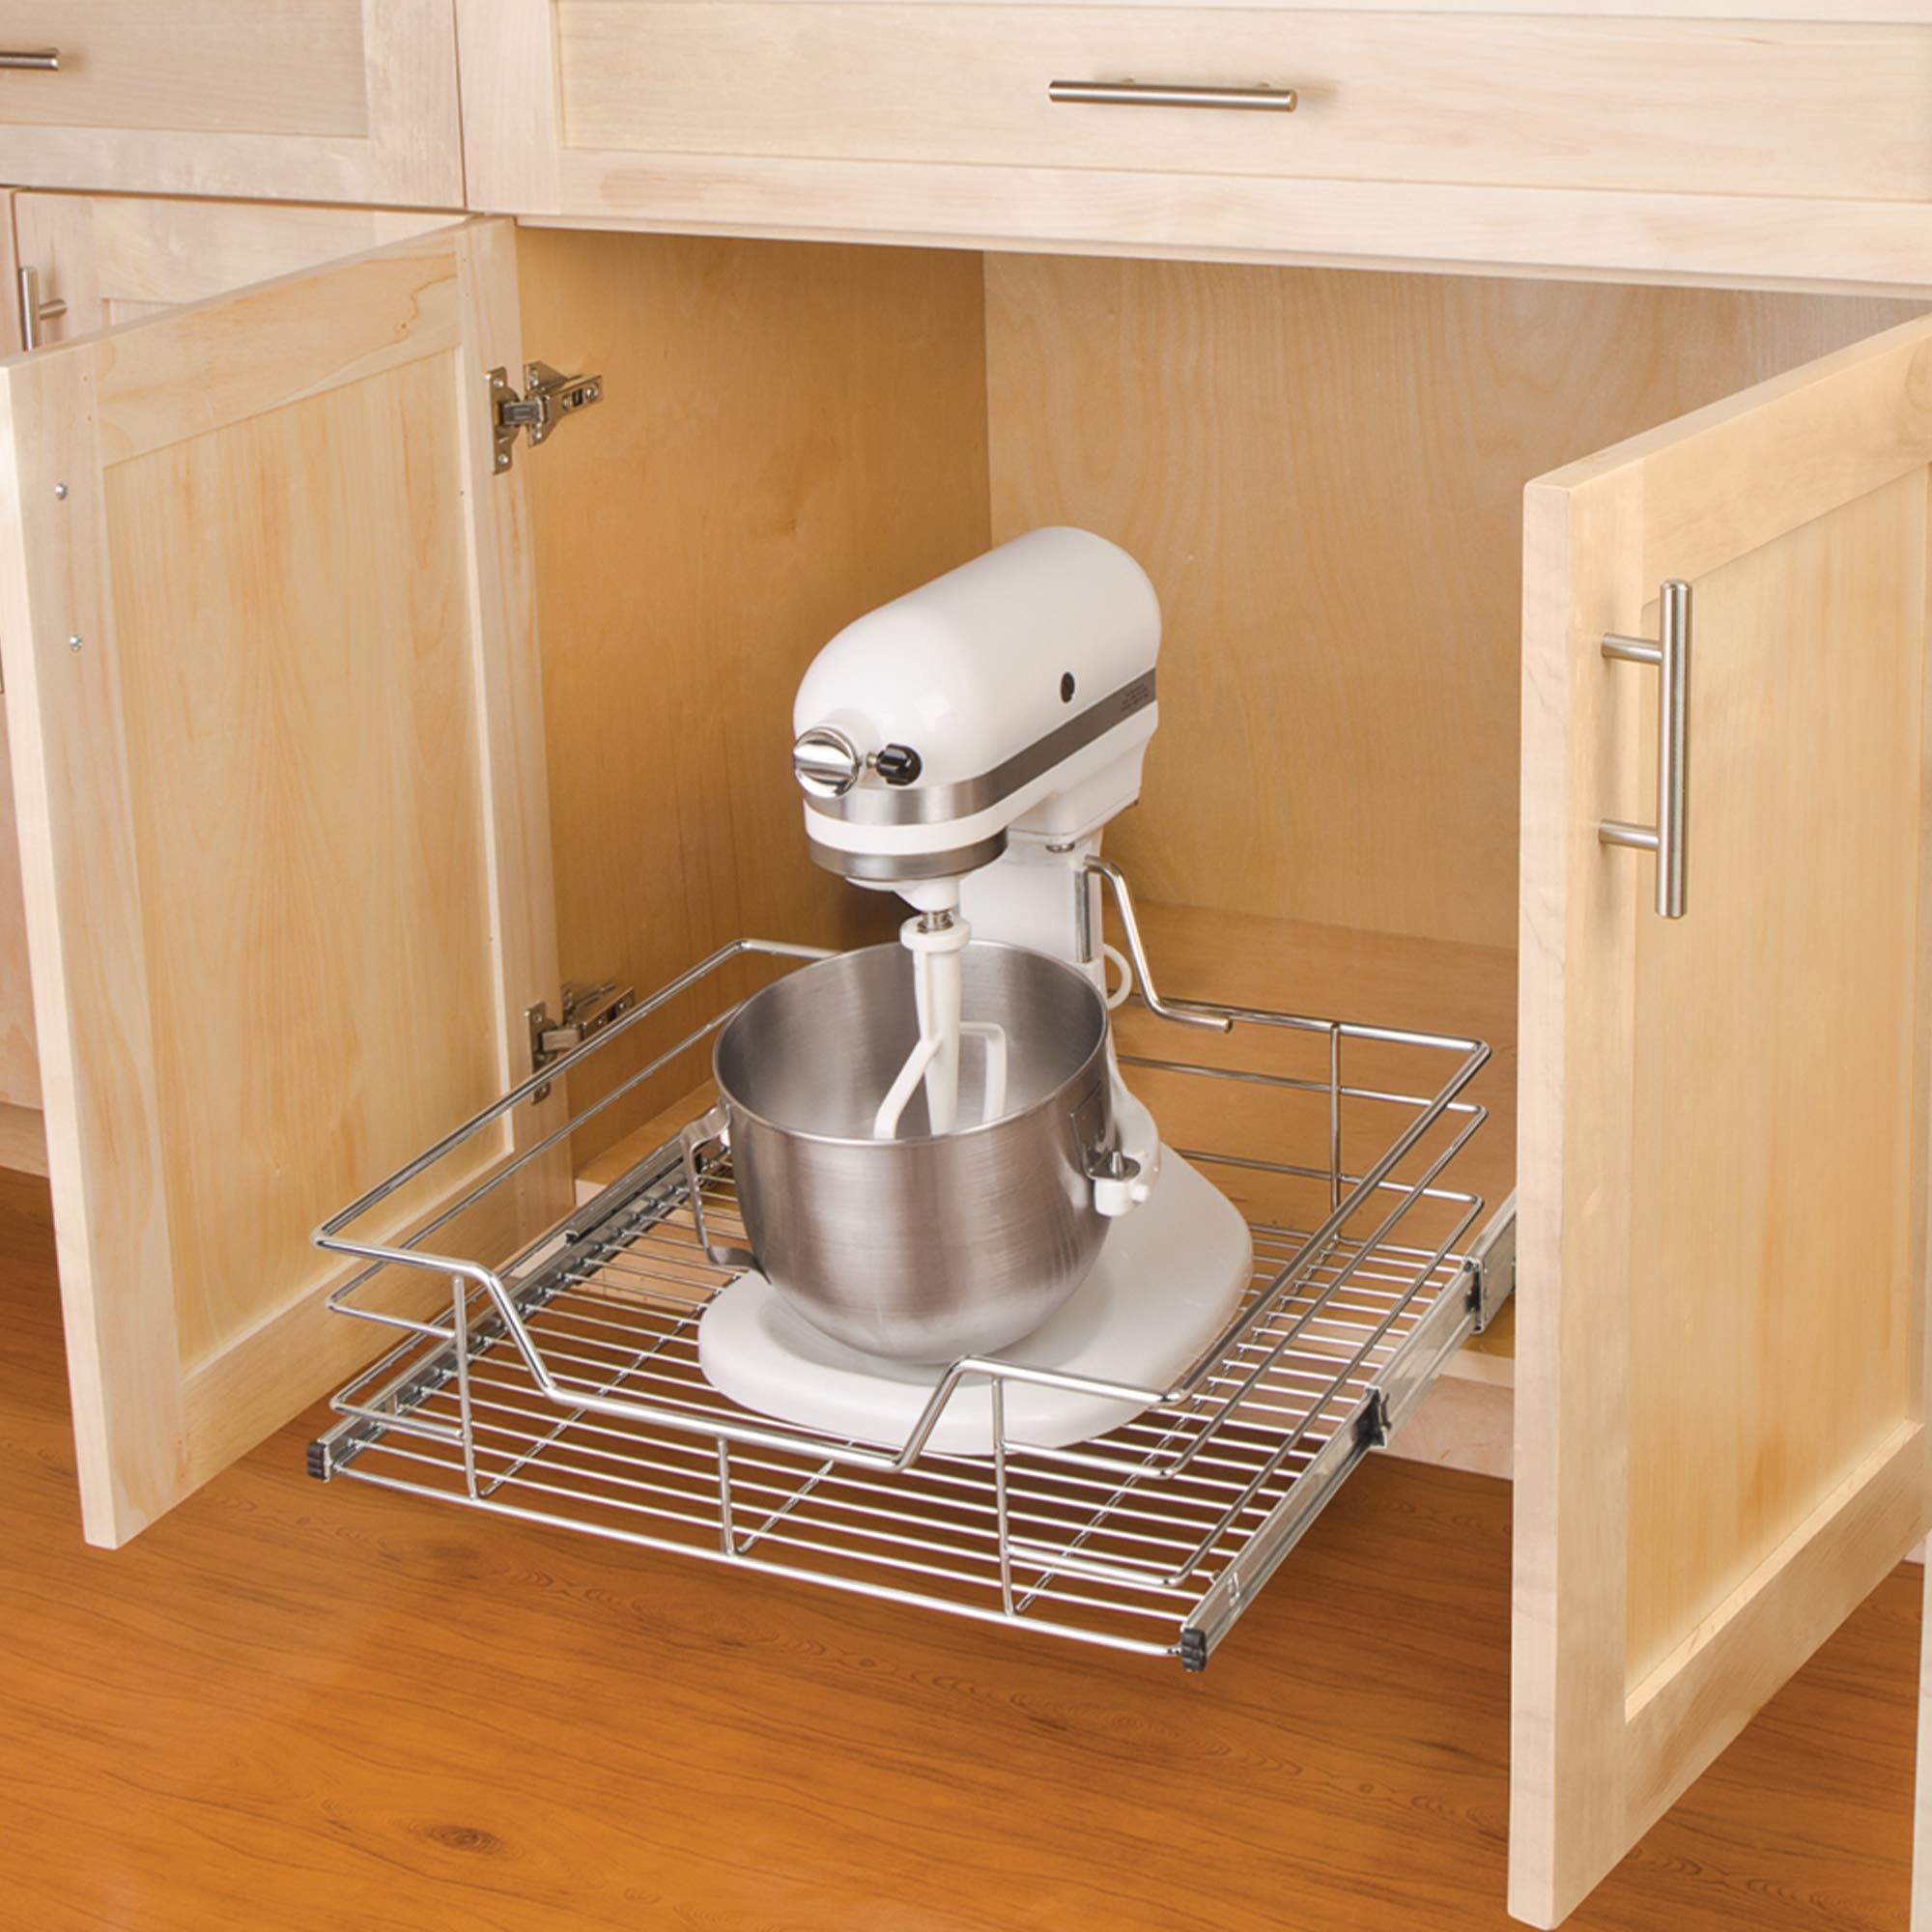 https://www.shopsmartdesign.com/cdn/shop/products/sliding-pull-out-metal-cabinet-shelf-multiple-sizes-smart-design-kitchen-8441290-incrementing-number-484613.jpg?v=1679337174